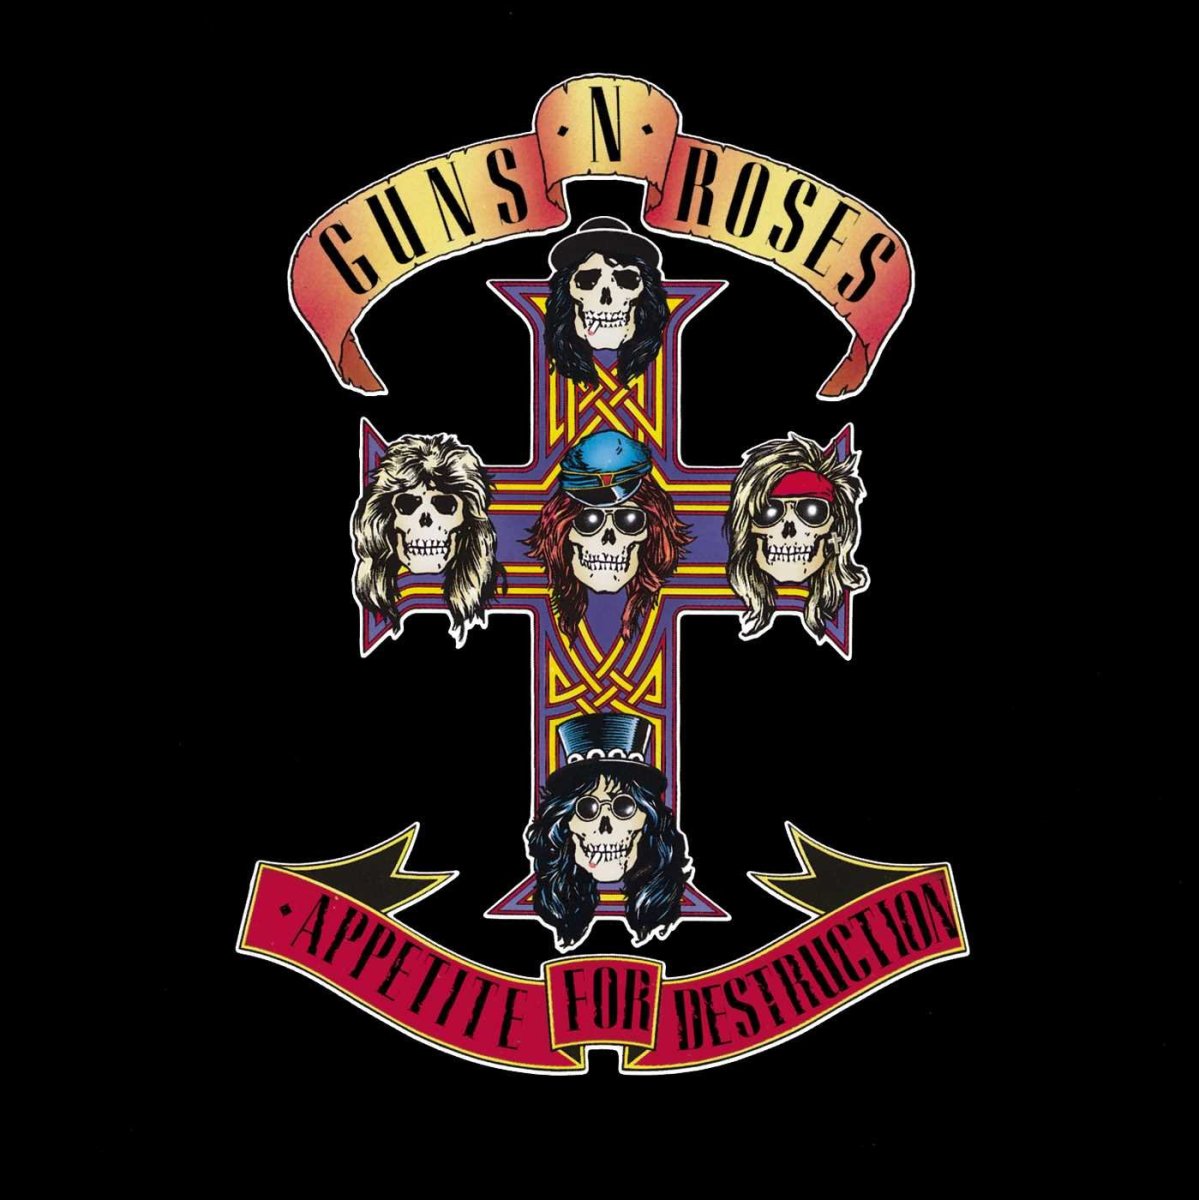 Guns N Roses - Appetite album cover